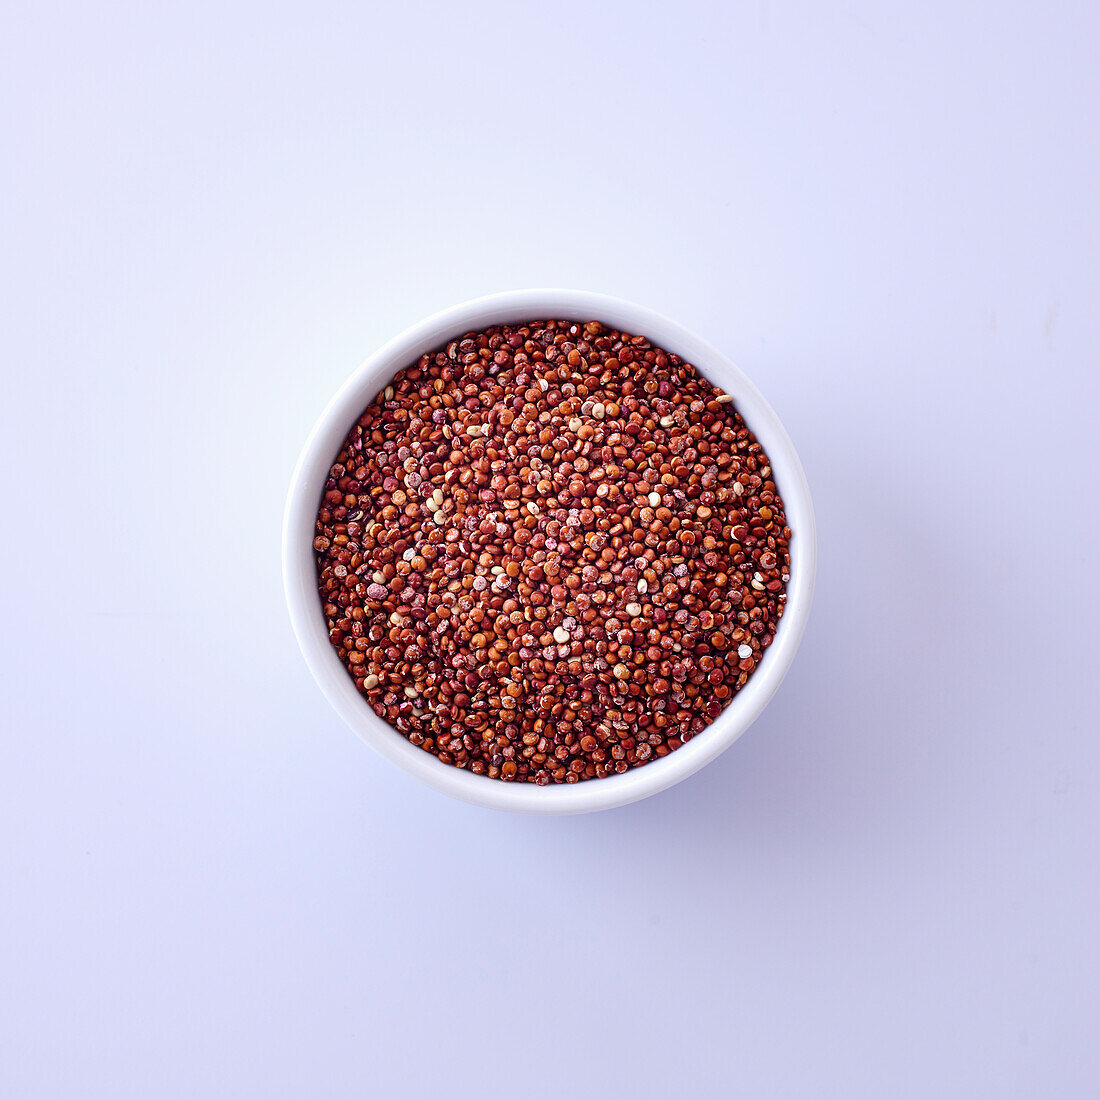 Quinoa in einer Schale